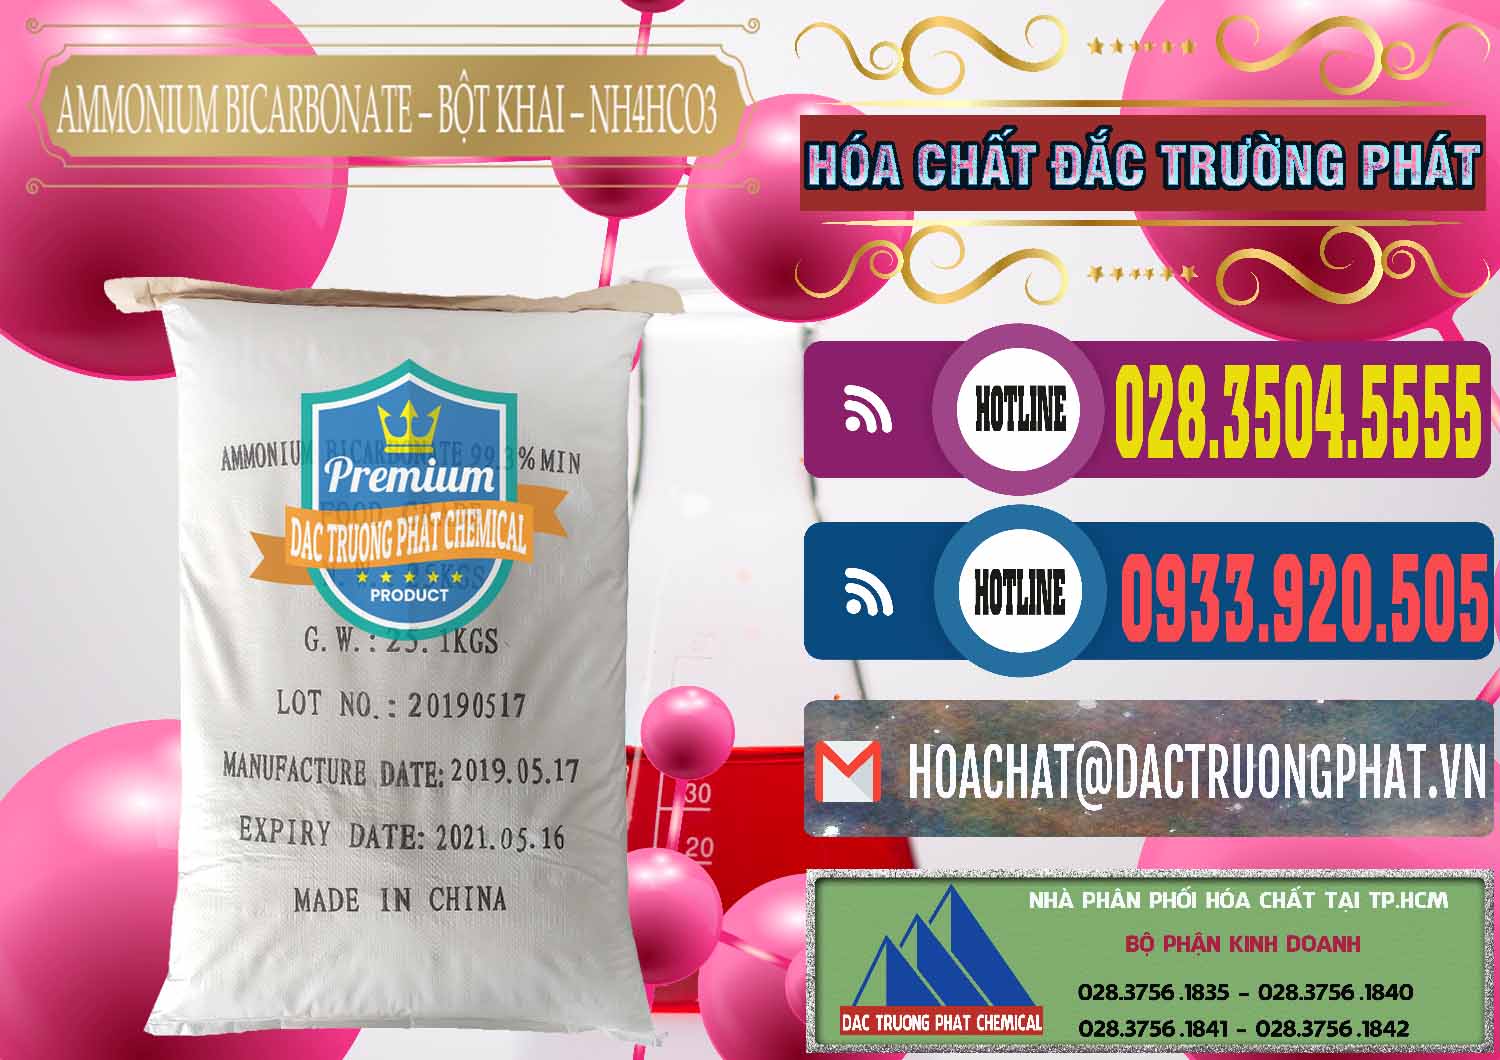 Cty chuyên kinh doanh & bán Ammonium Bicarbonate - Bột Khai Food Grade Trung Quốc China - 0018 - Cty phân phối & bán hóa chất tại TP.HCM - muabanhoachat.com.vn